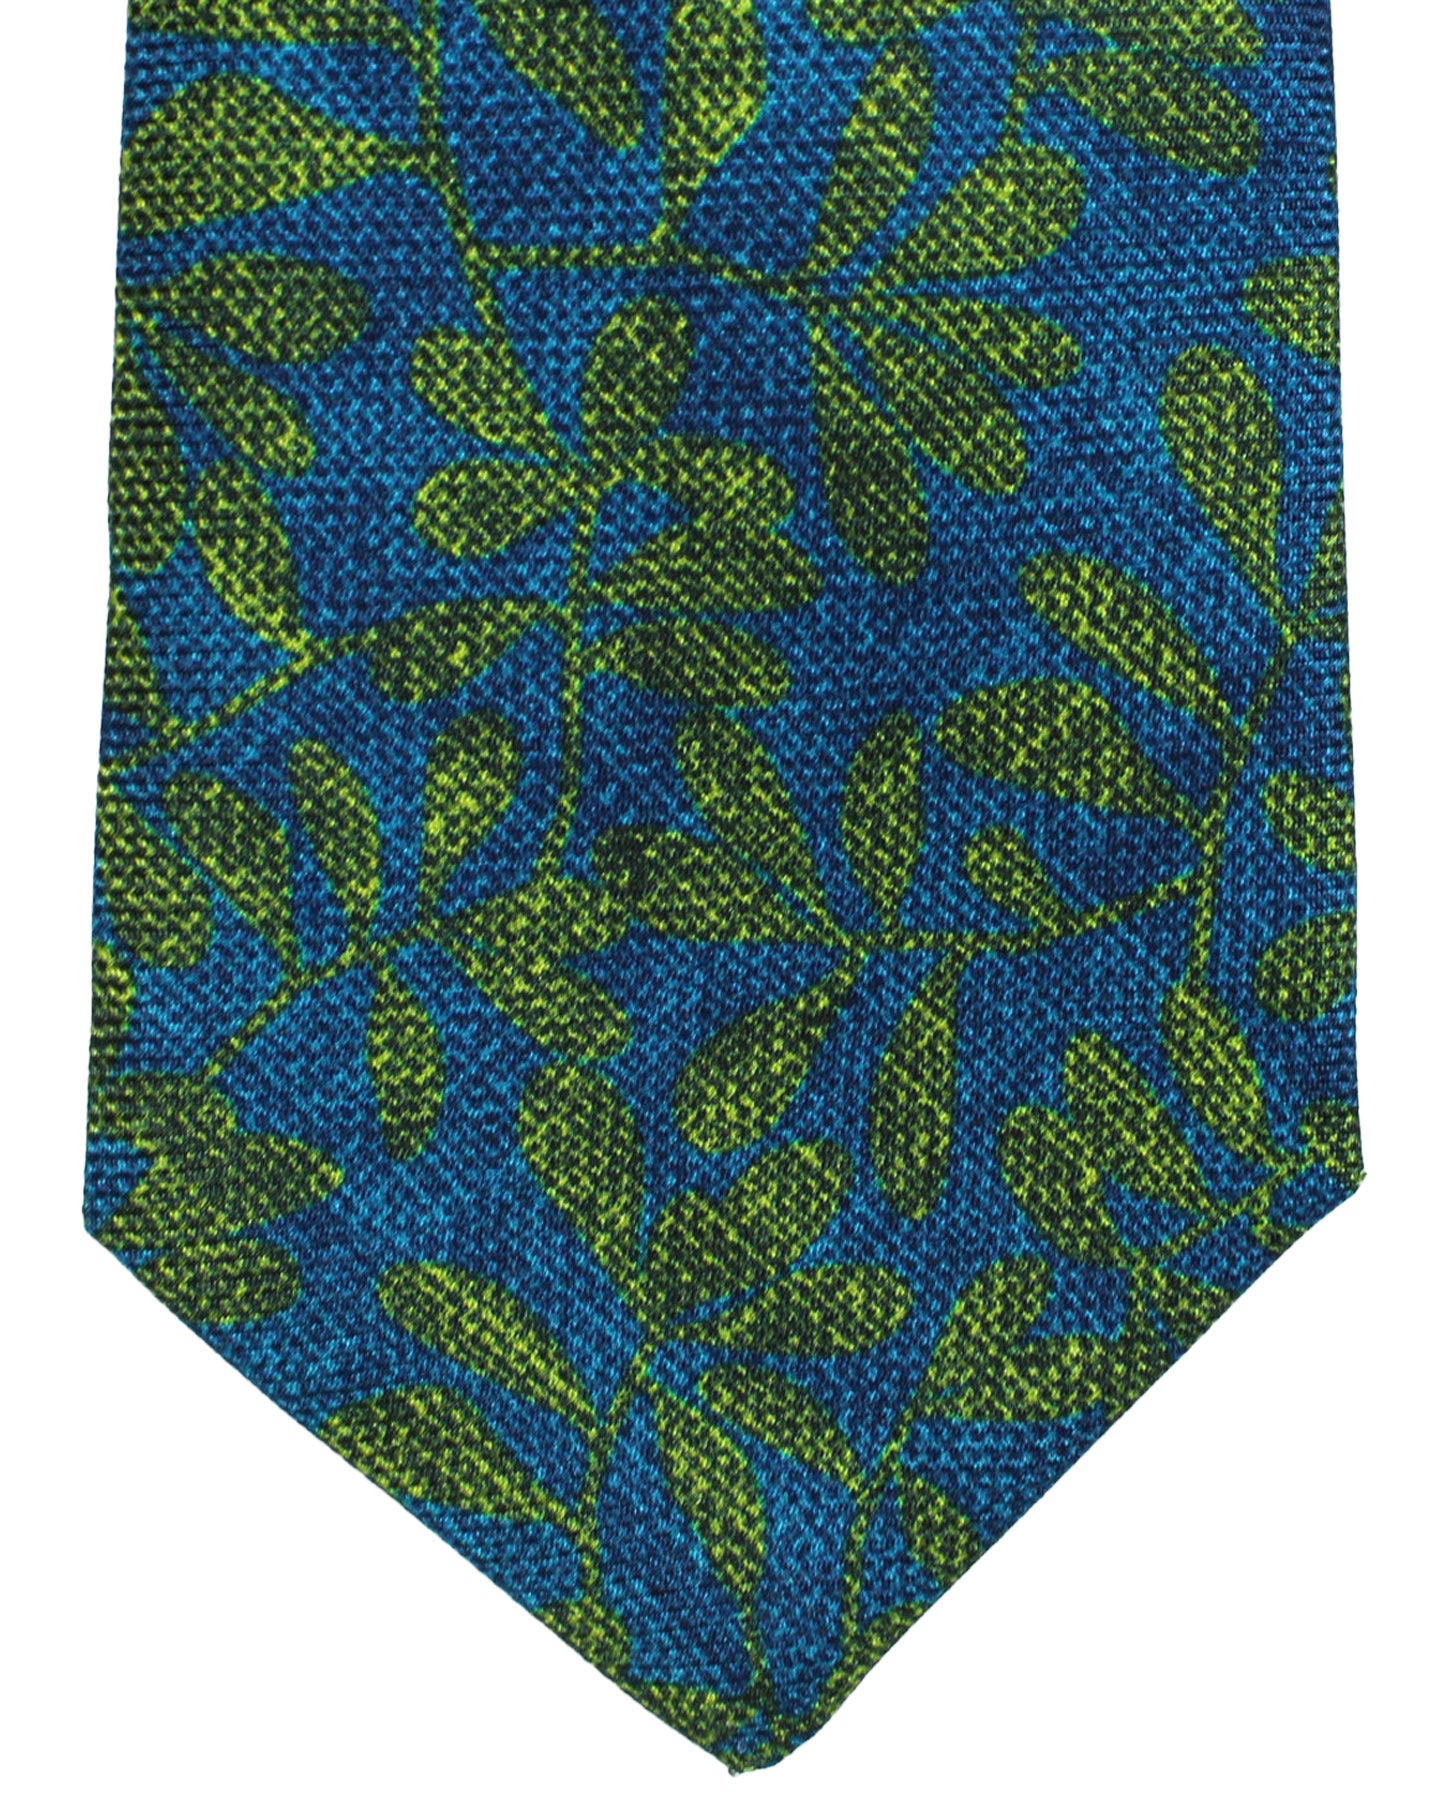 Kiton Silk Tie Aqua Blue Green Floral Design - Sevenfold Necktie